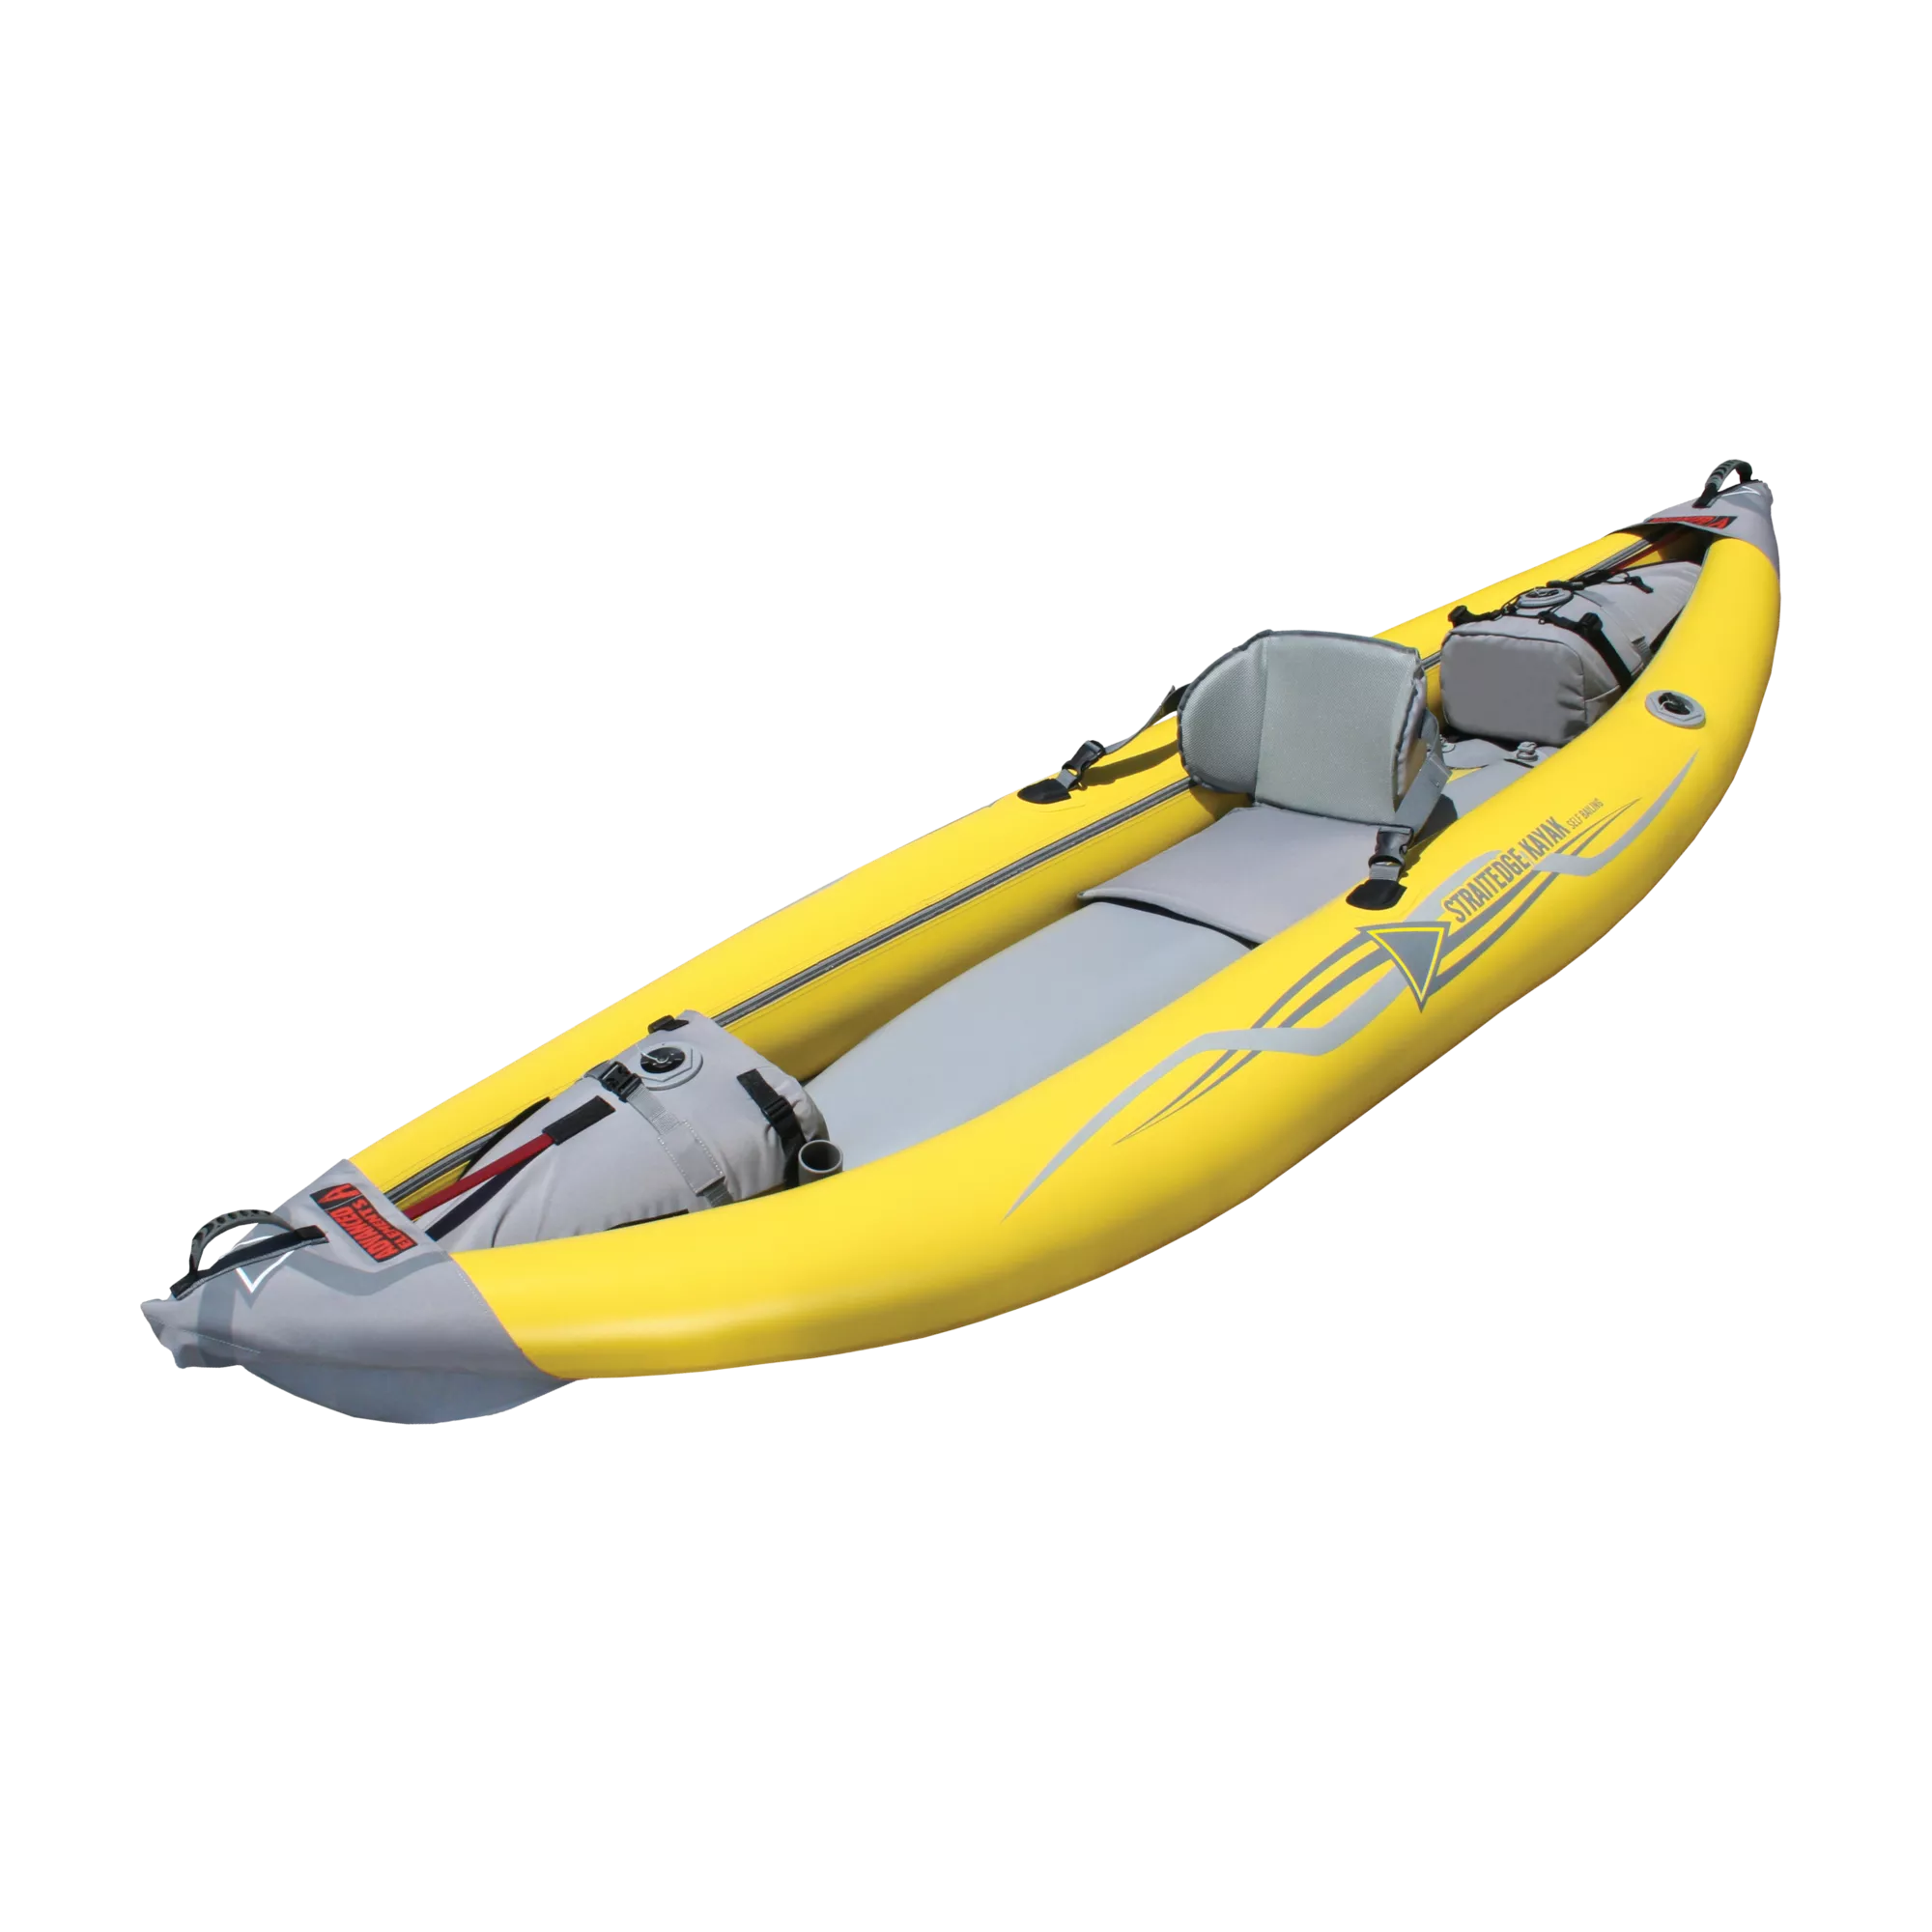 Sneak Peek: Purist 65 Inflatable Kayak, by Tony Curless